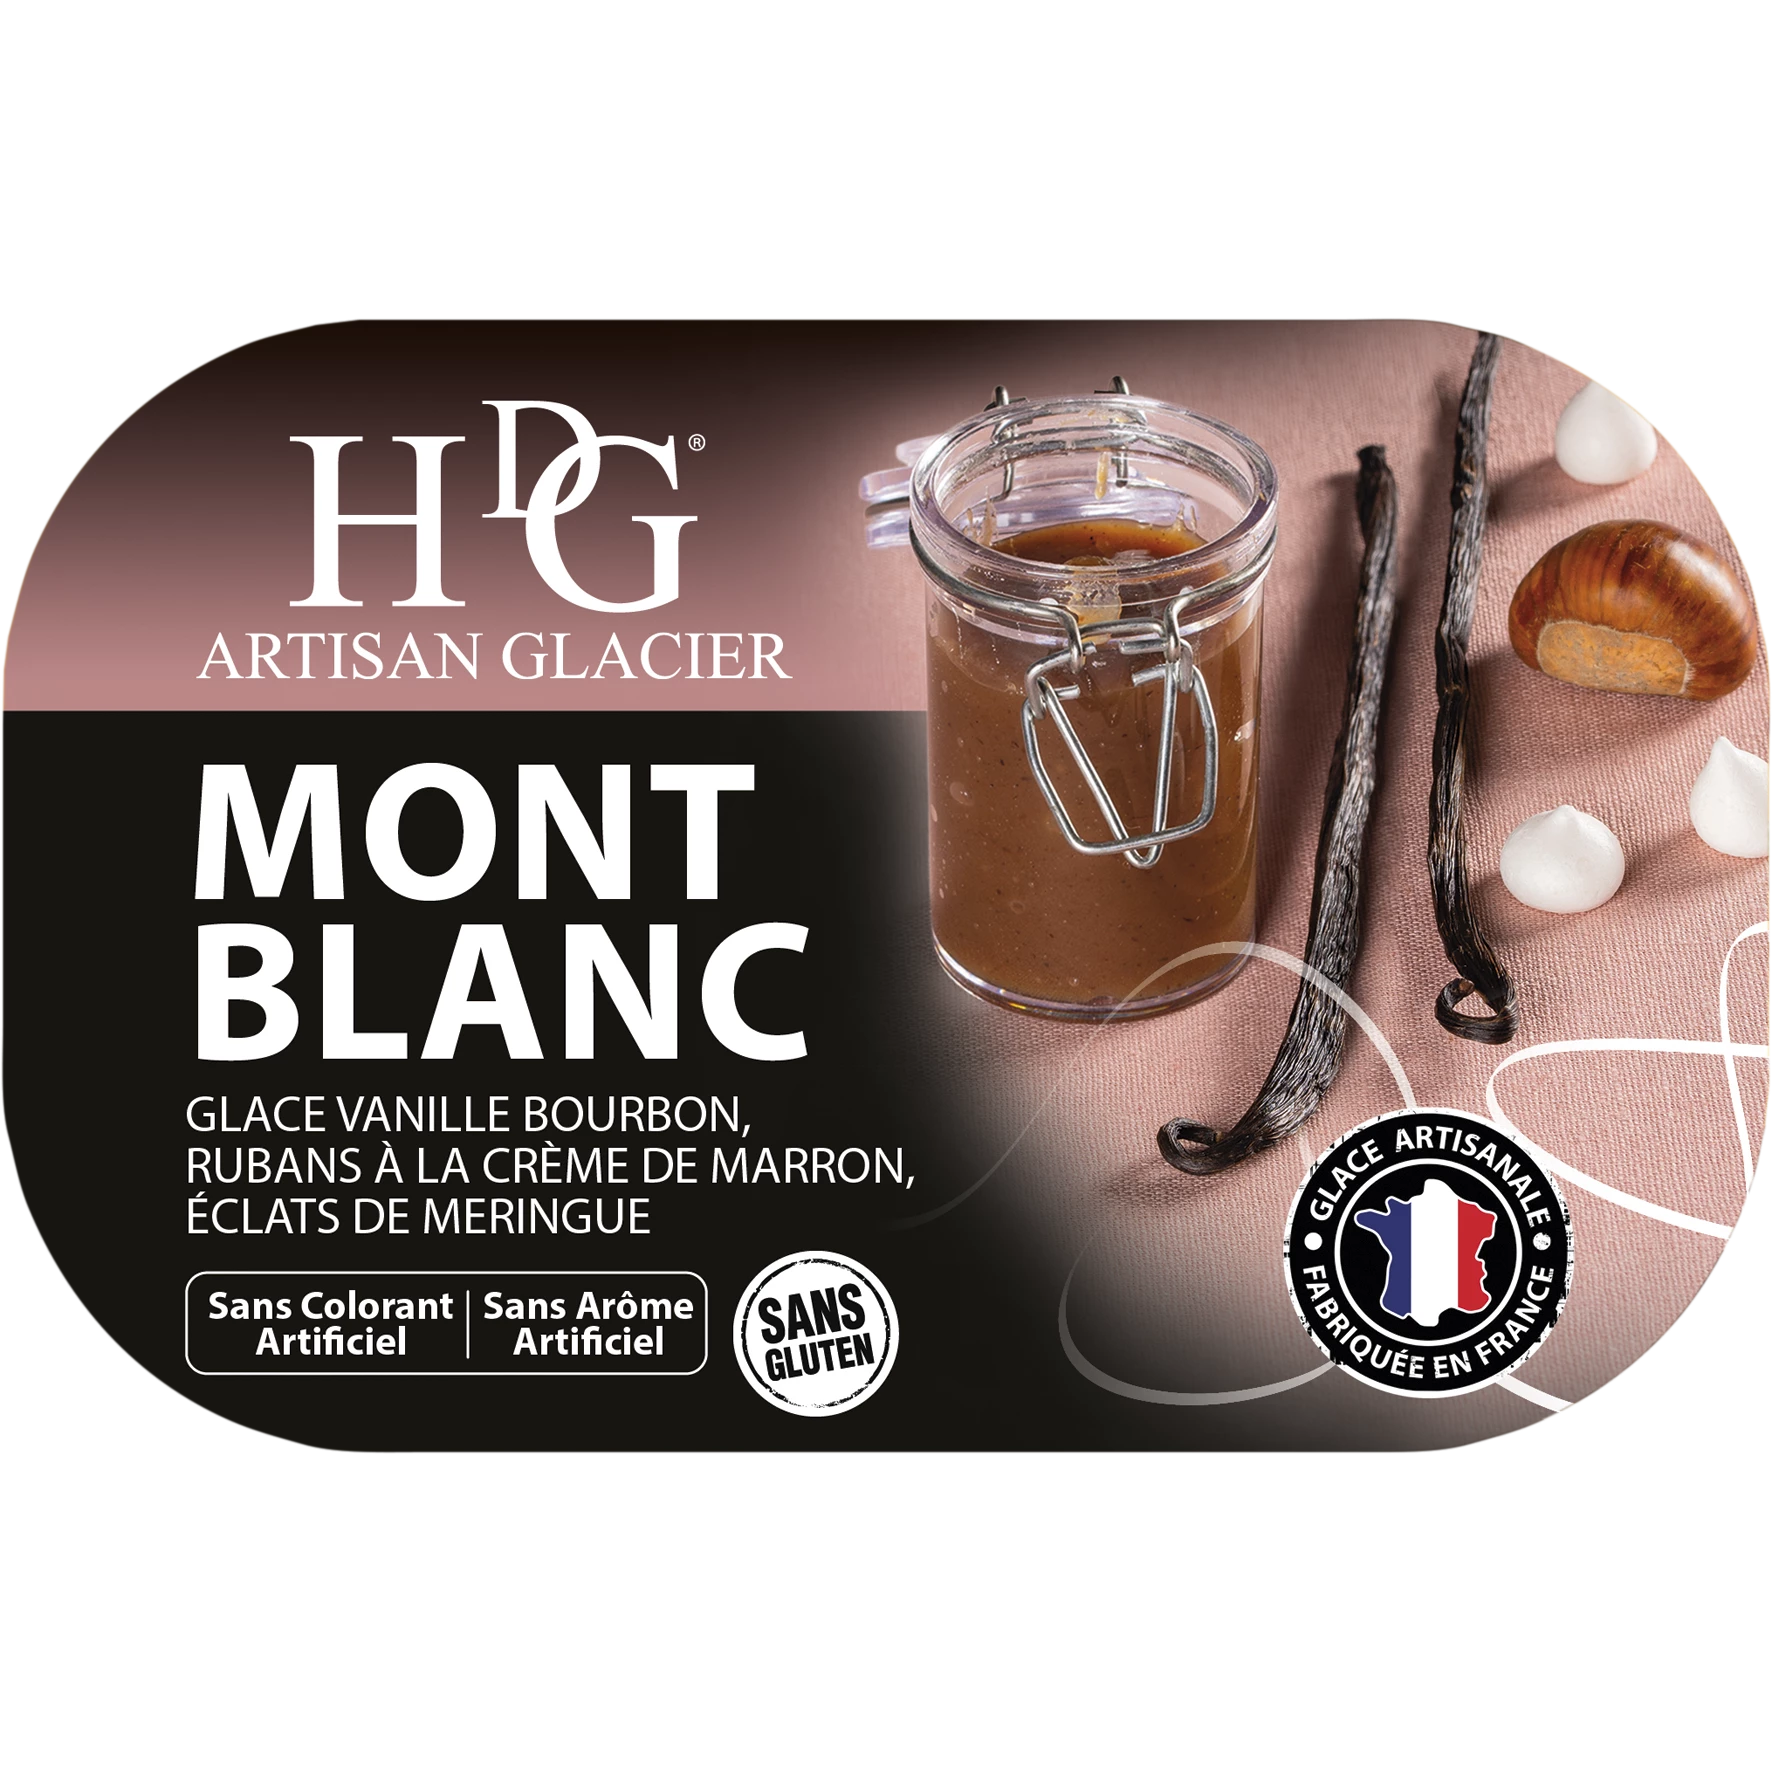 Kem Mont Blanc 487.5g - Câu Chuyện Kem